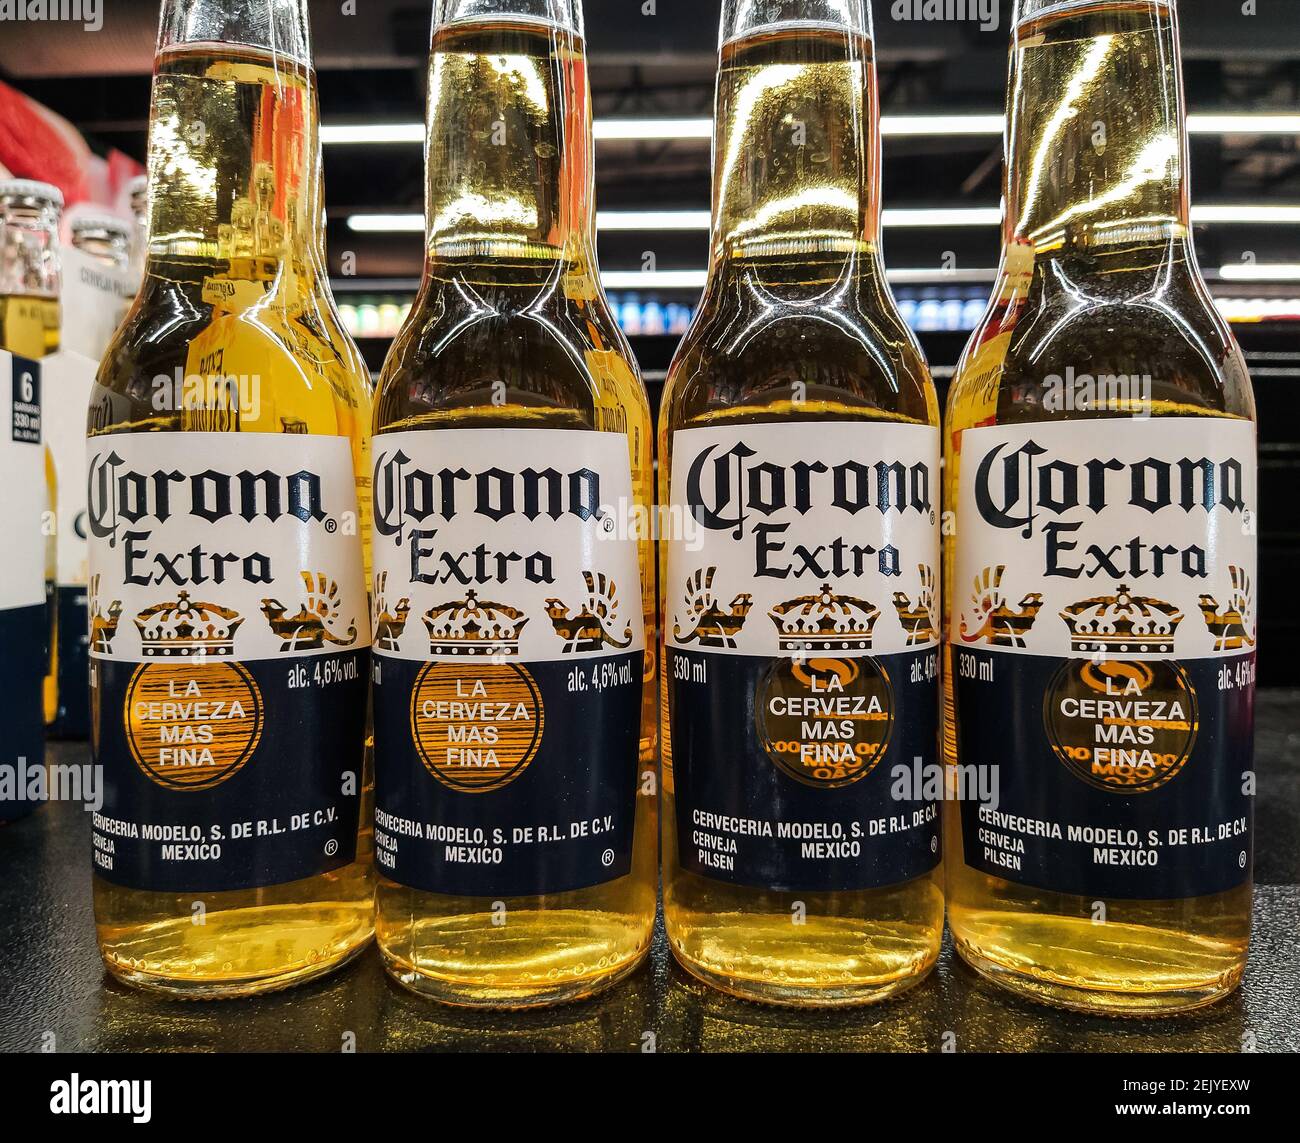 SOROCABA, SP : CEREJA CORONA EXTRA - la producción de cerveza  Corona Extra fue suspendida temporalmente en México en abril. El Grupo  Modelo, propietario de la Marca, tomó esta decisión en